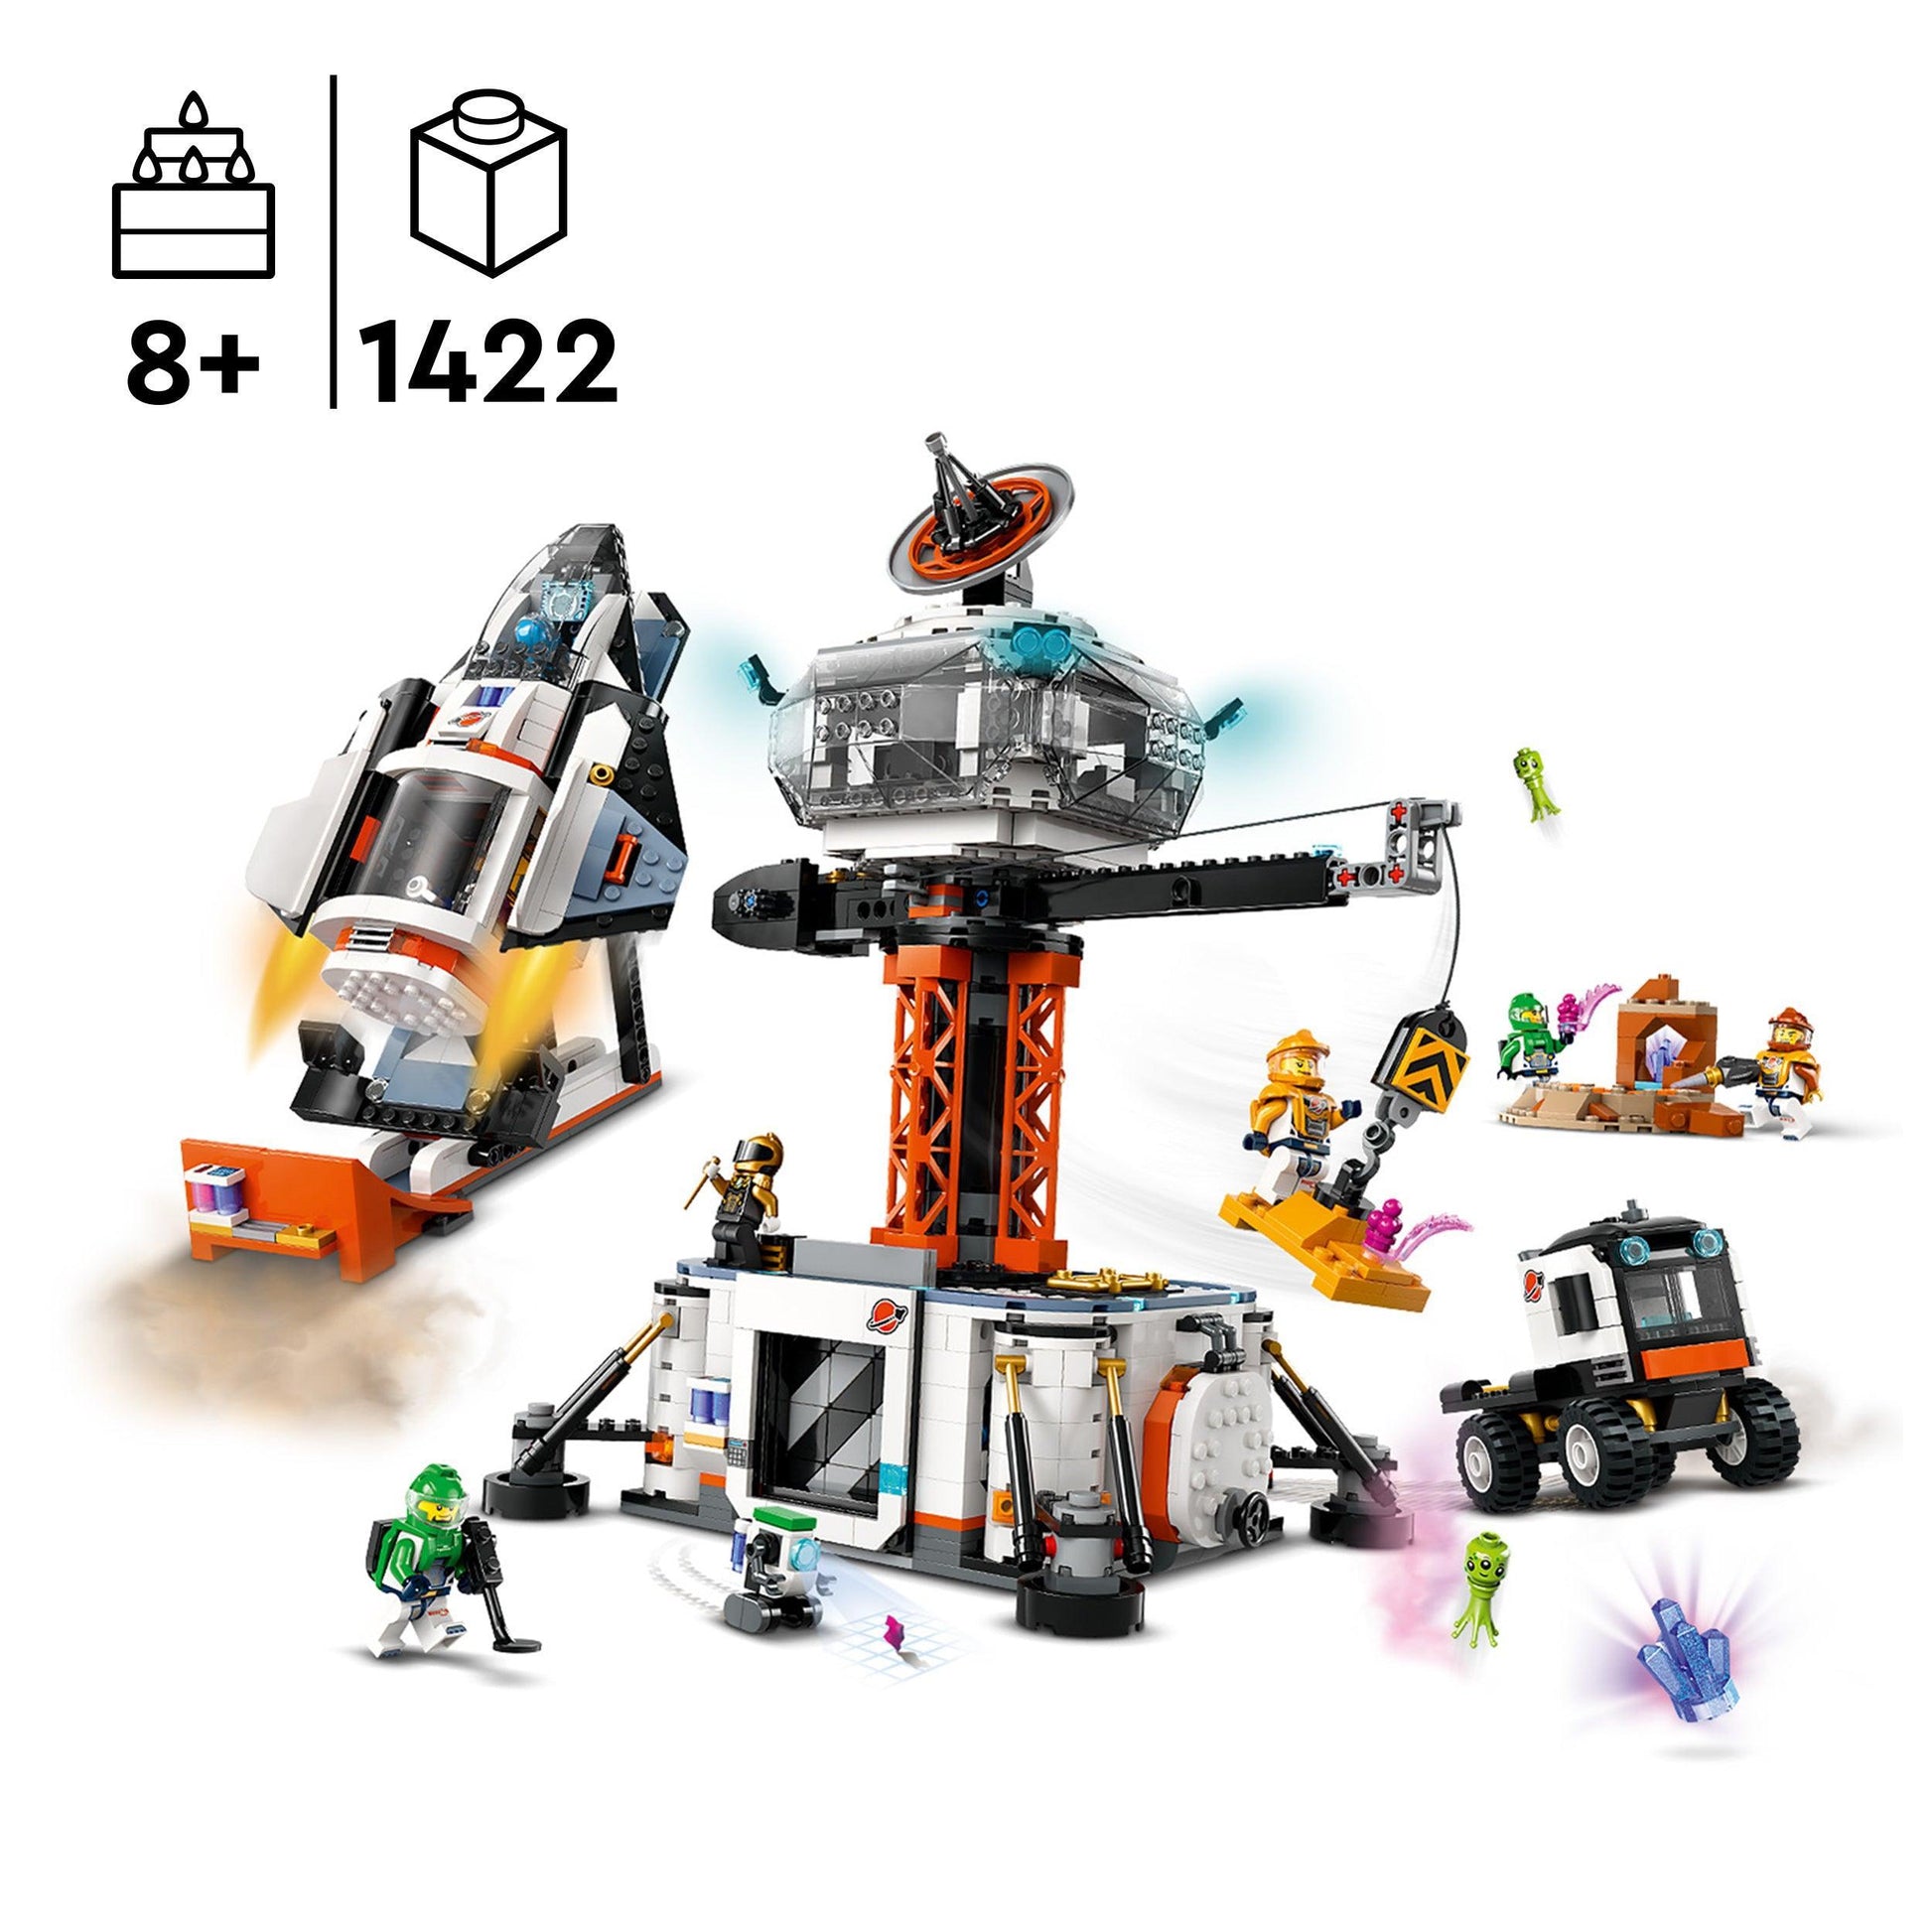 LEGO Ruimtebasis en raketlanceerplatform 60434 City LEGO City @ 2TTOYS LEGO €. 147.49